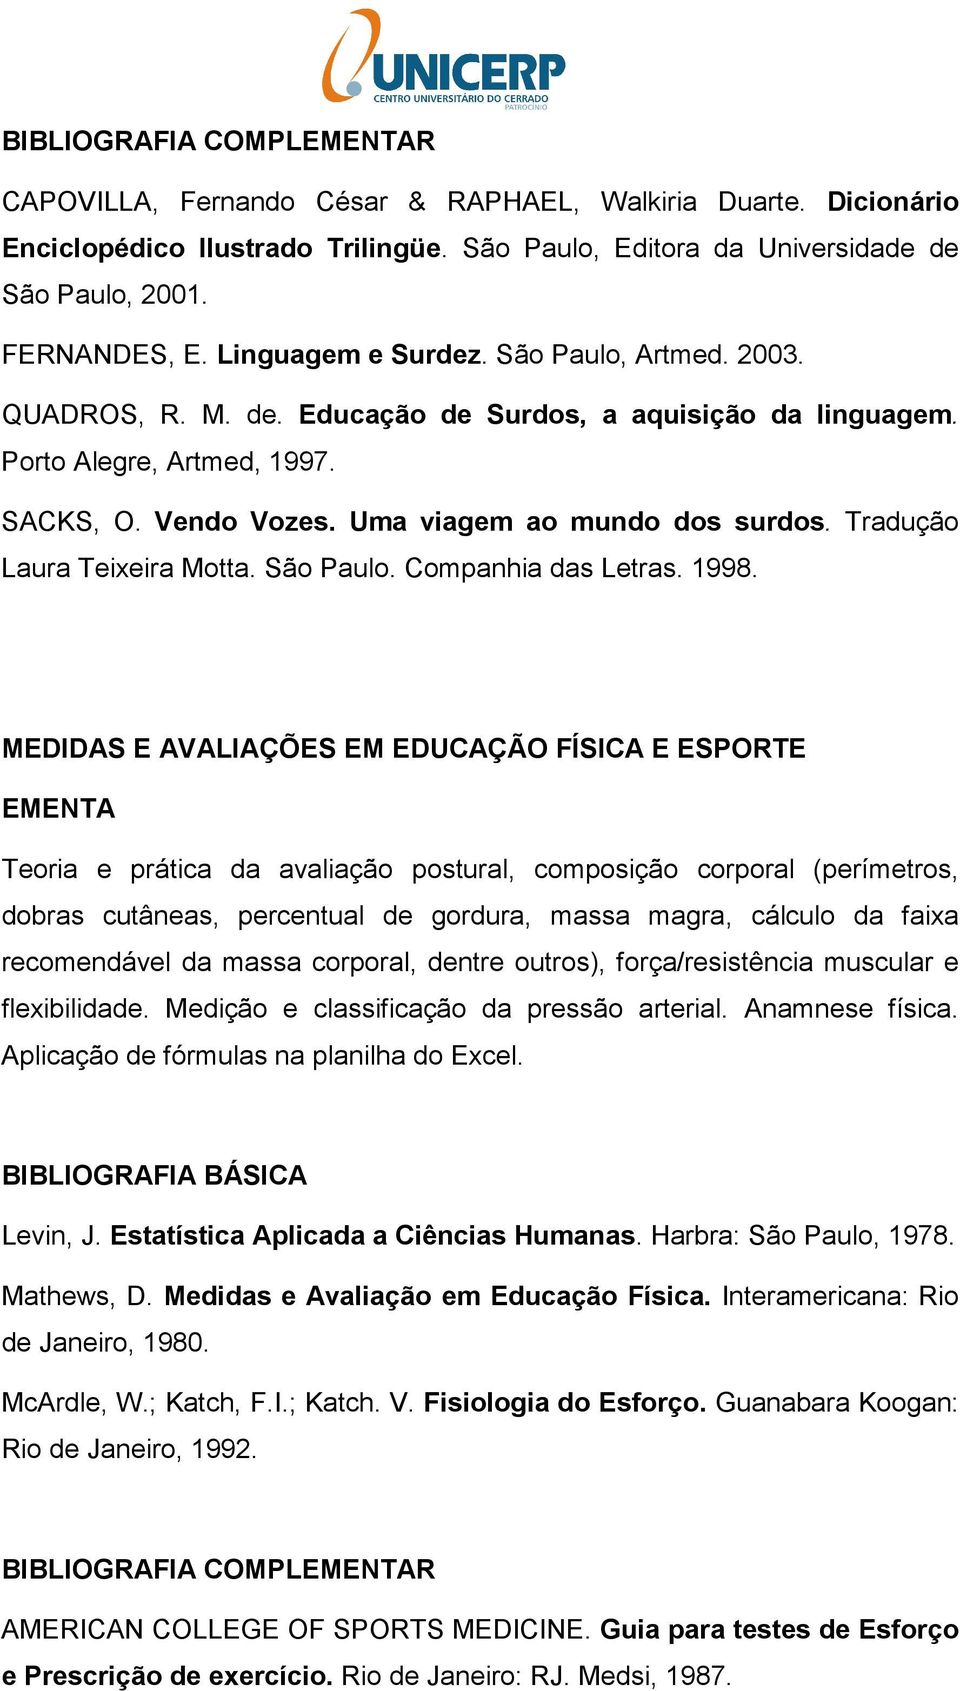 Tradução Laura Teixeira Motta. São Paulo. Companhia das Letras. 1998.